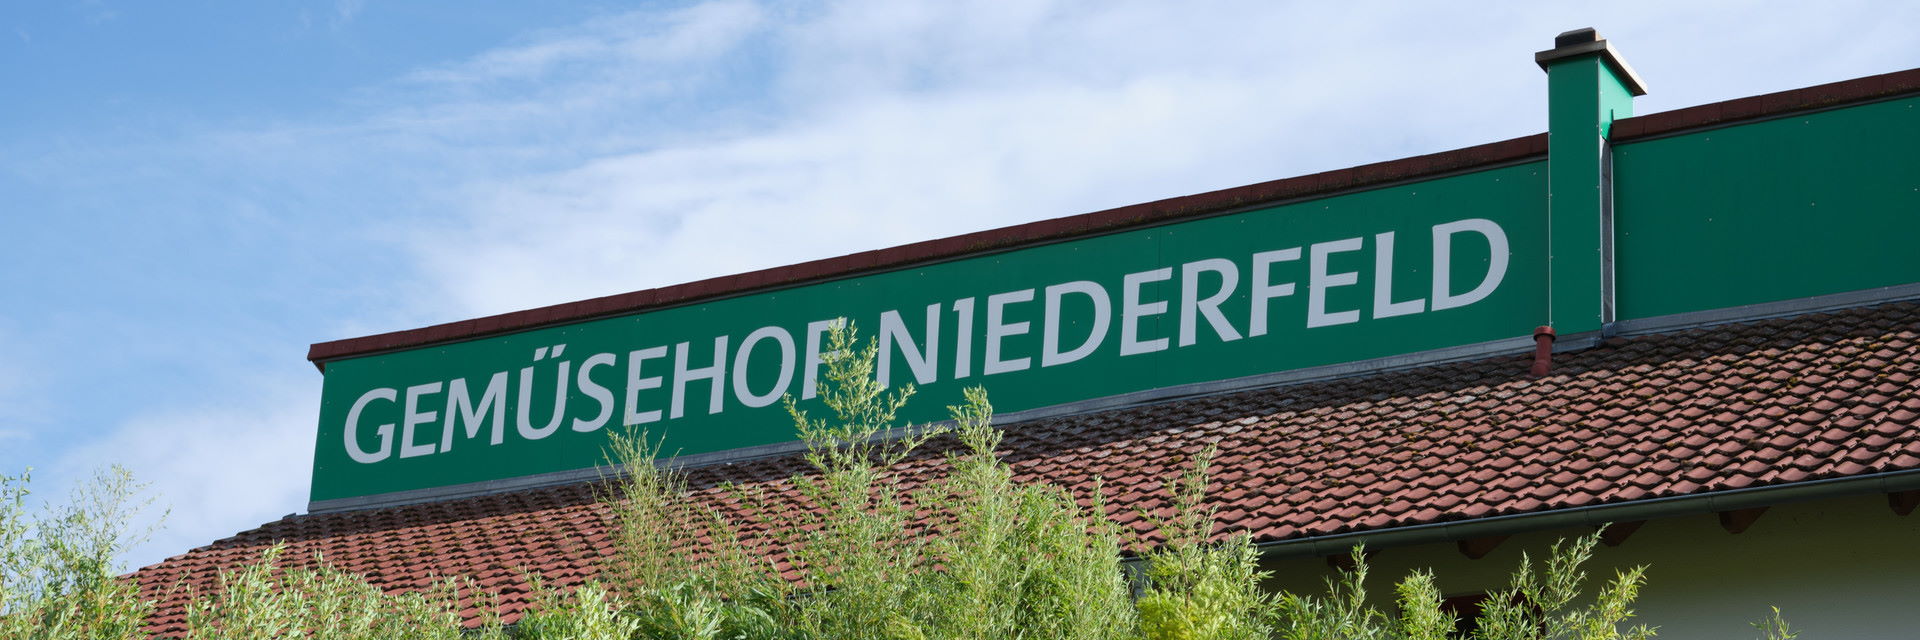 Ein grünes Schild mit der Aufschrift "Gemüsehof Niederfeld"